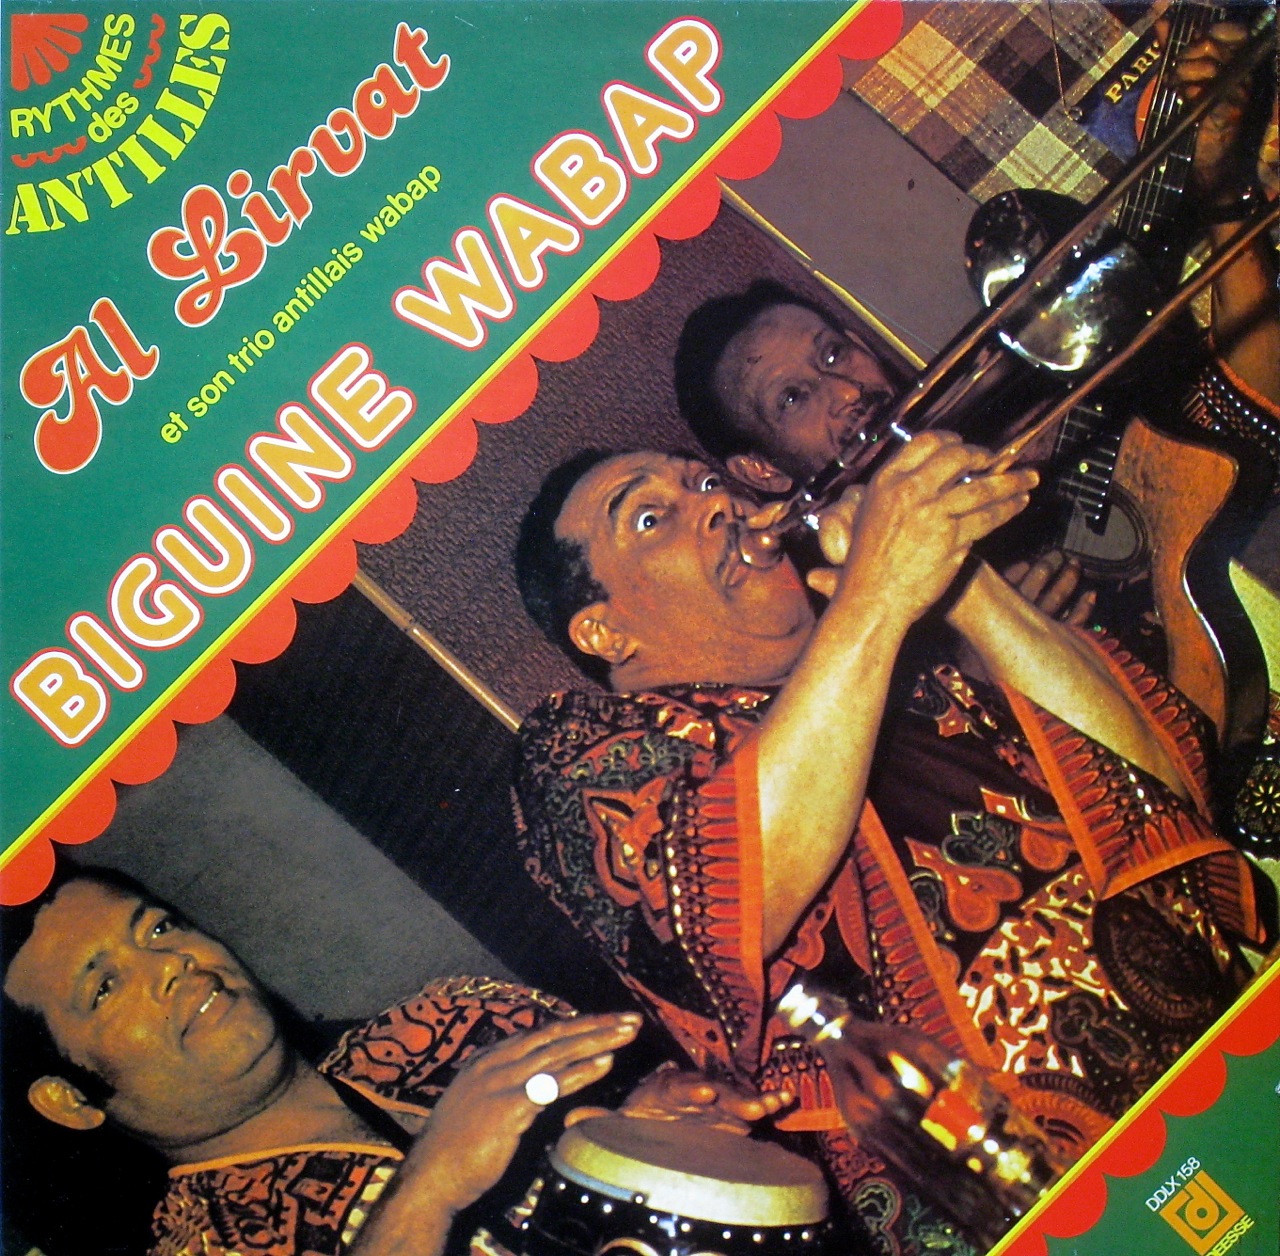 Al Lirvat et son Trio Antillais Wabap - Biguine Wabap (1977) Beguine+Wabap+front